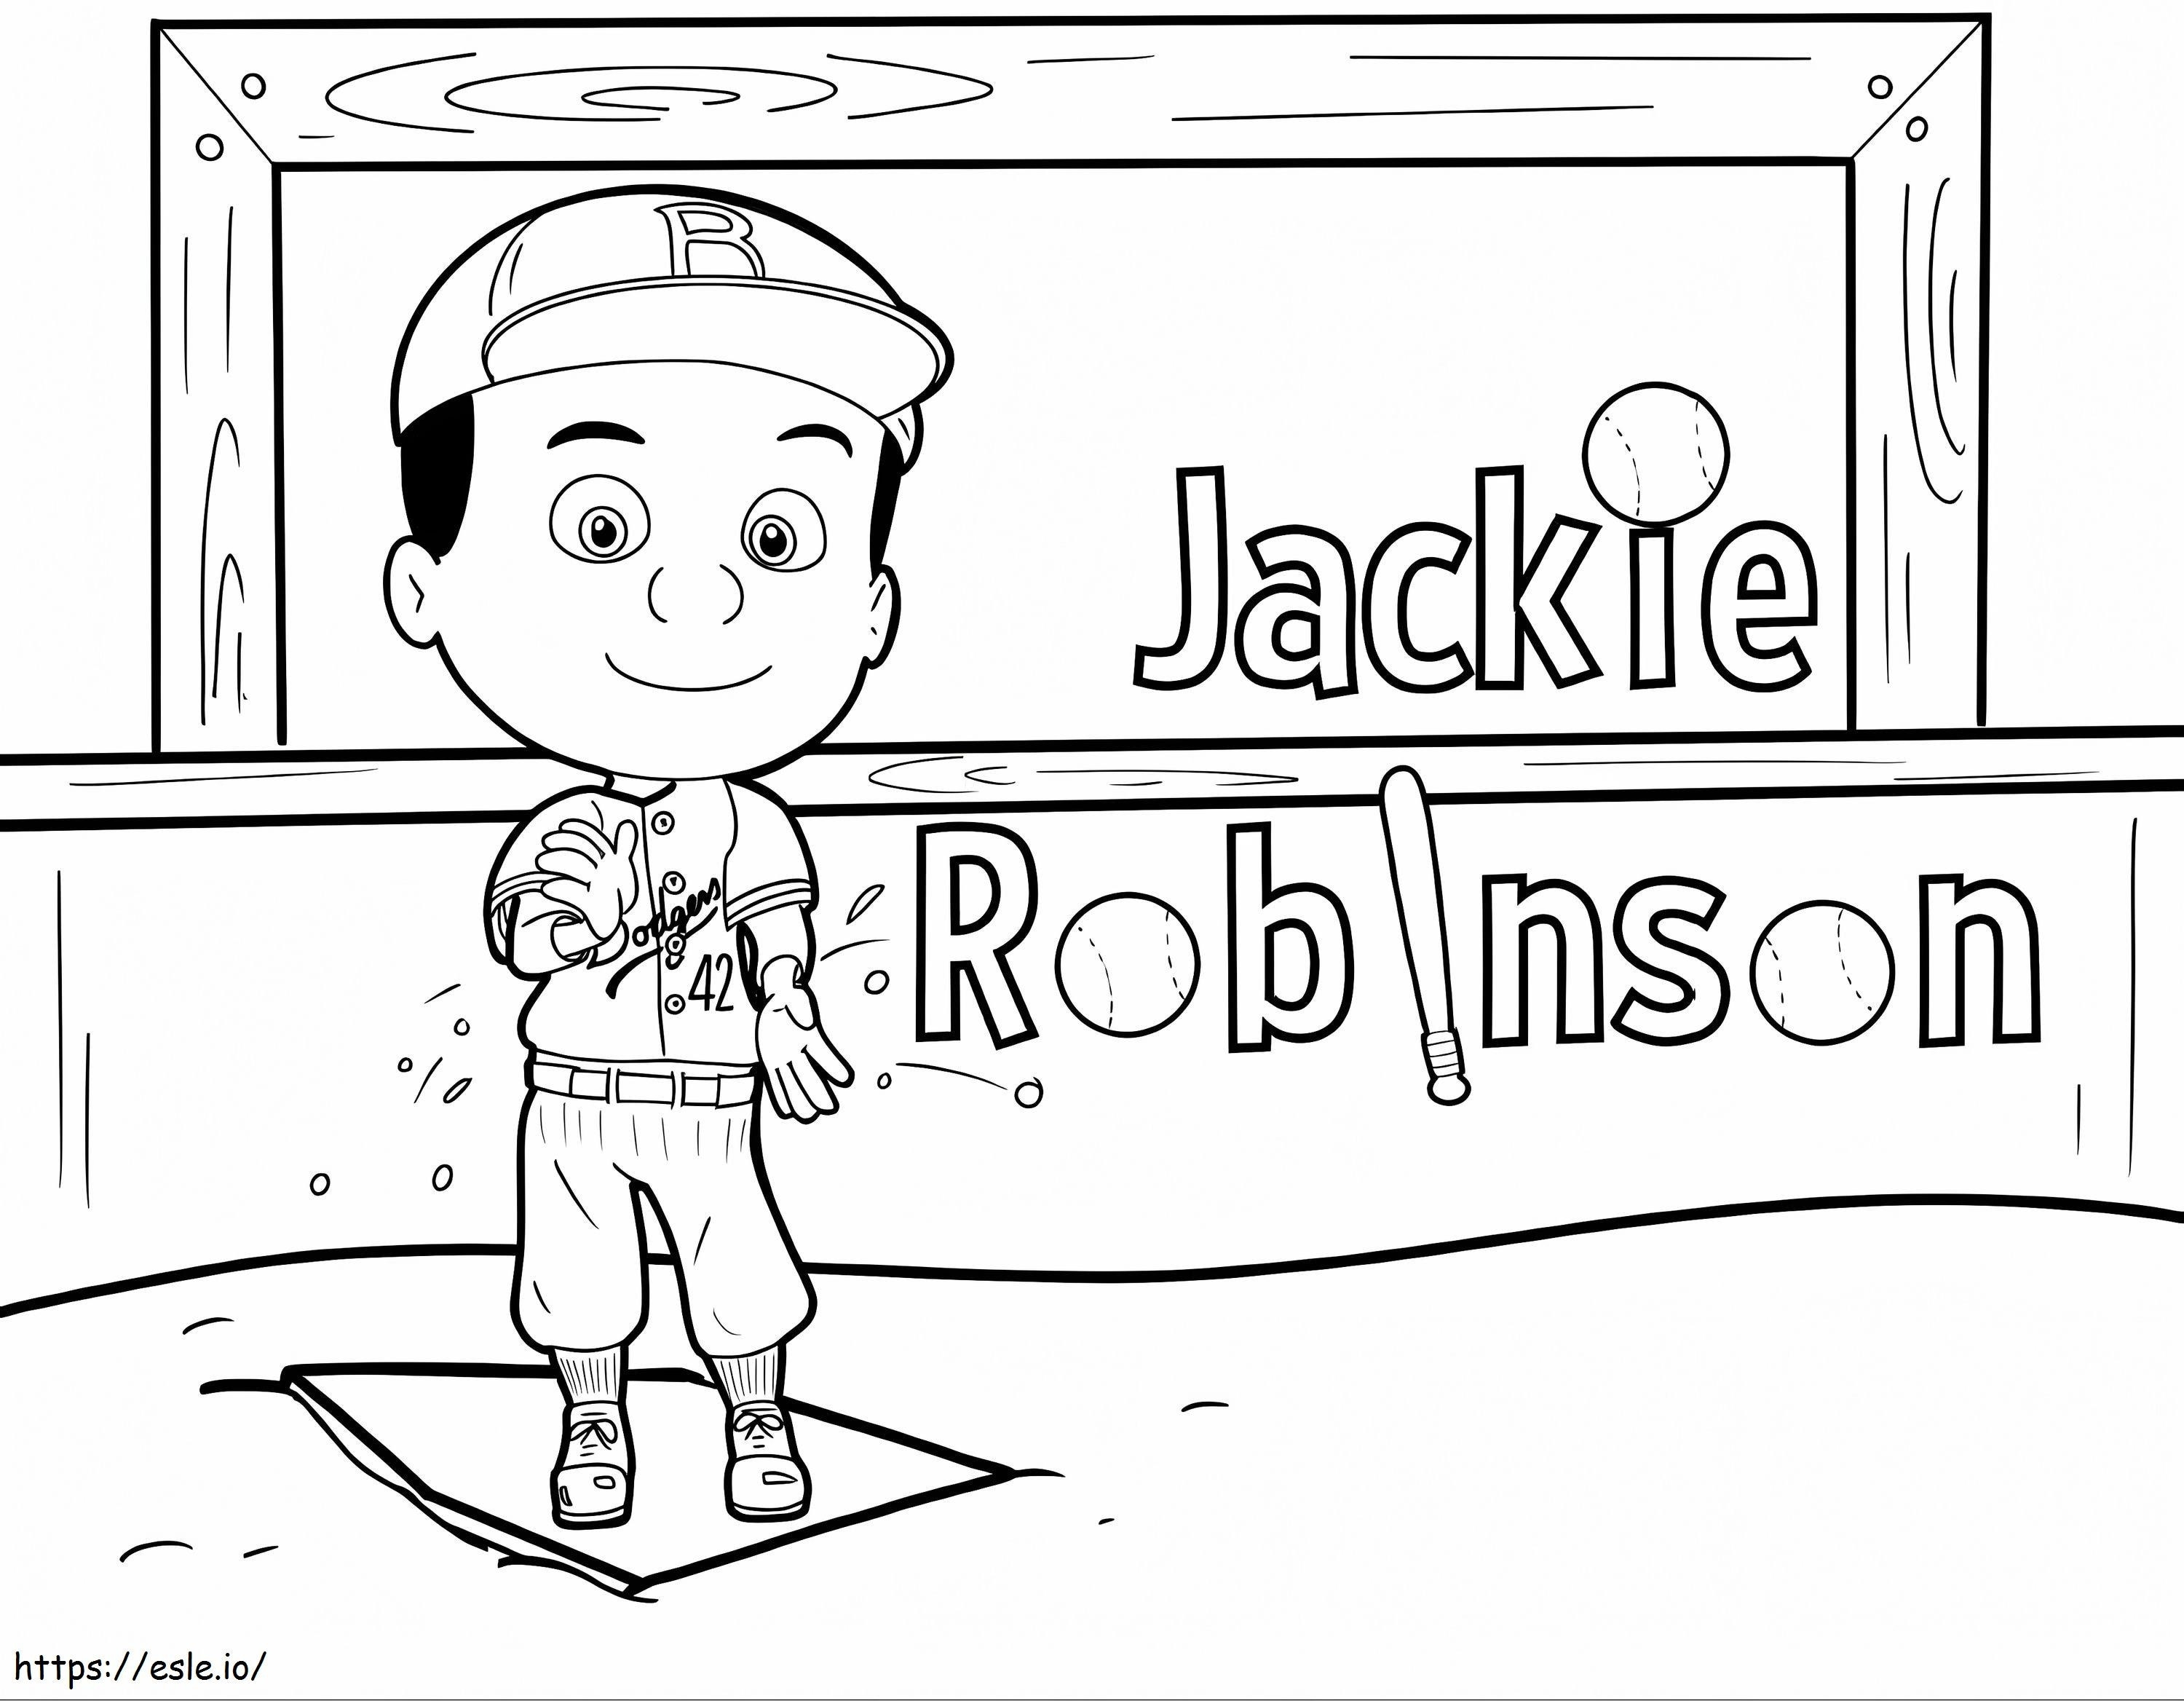 La piccola Jackie Robinson da colorare